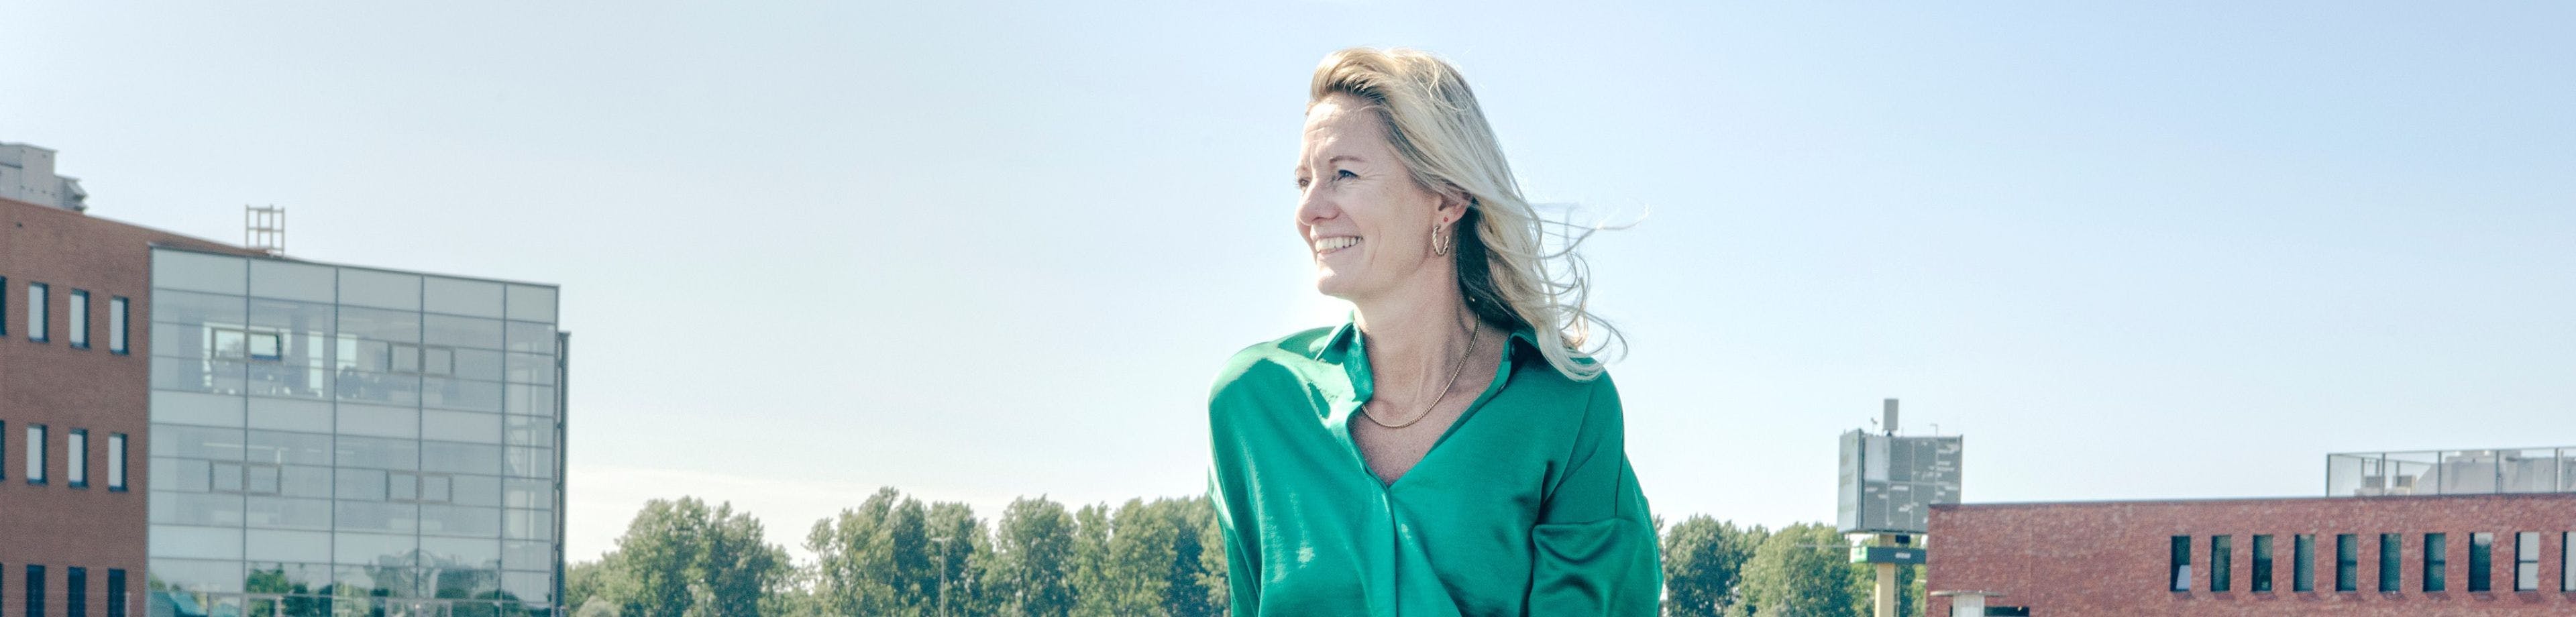 Marjolein Groen, directeur Sustainability en CSR bij mobiliteitsprovider Athlon Nederland, draagt een groene bloes en zit lachend op een parkeerplaats